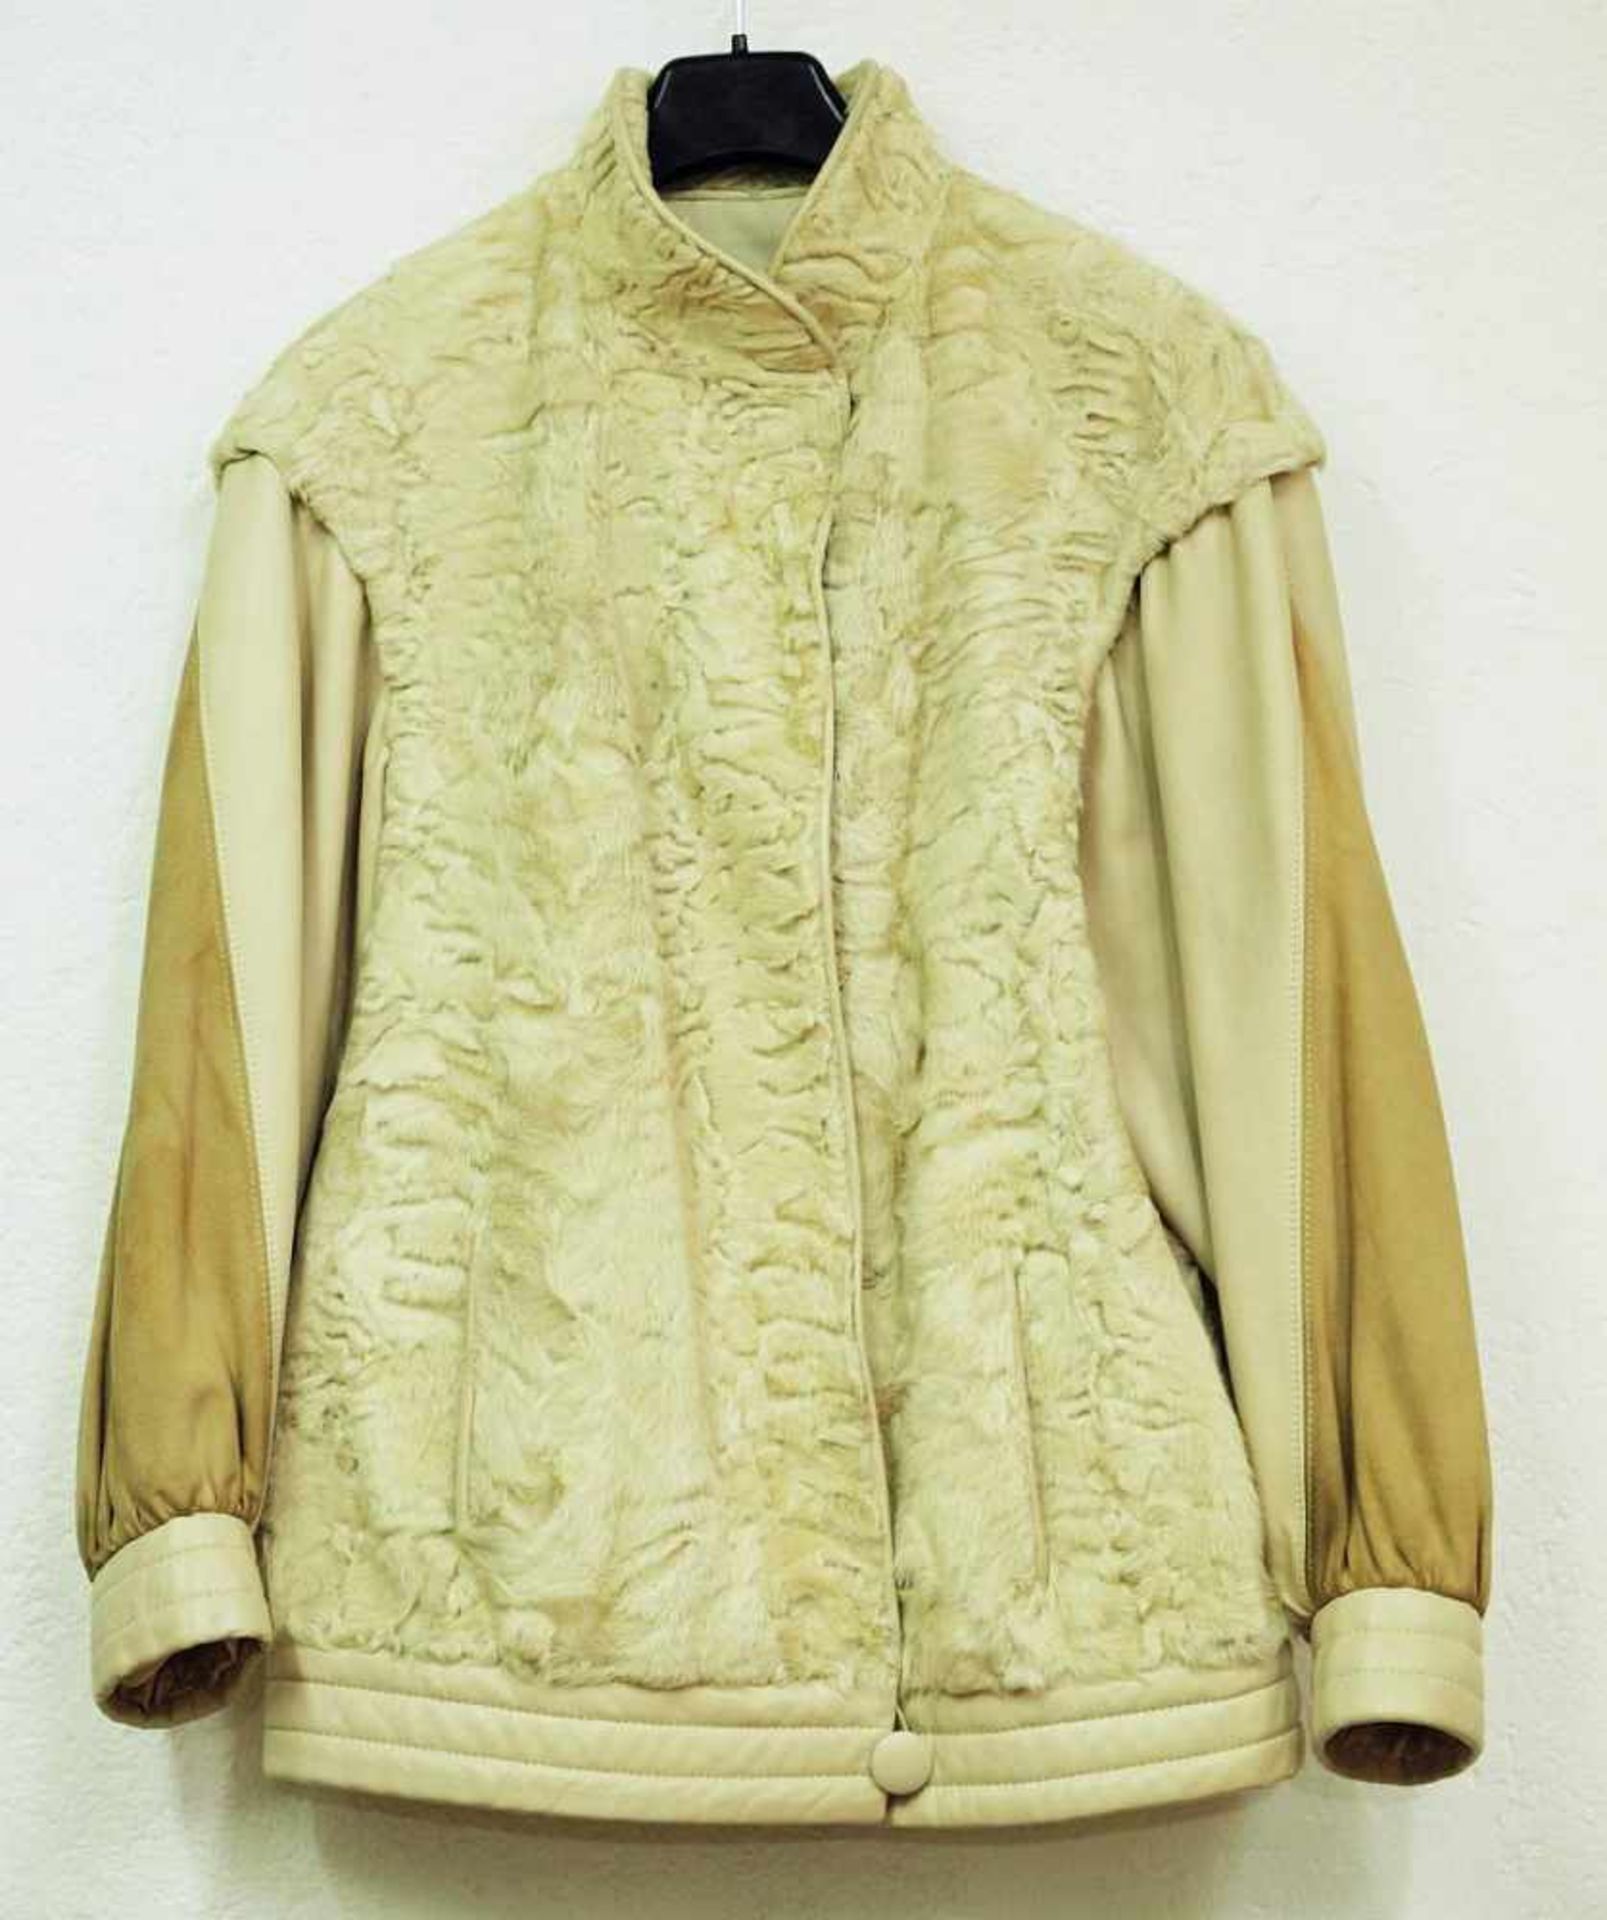 Sportliche Breitschwanz Persianer Jacke mit Nappa-Leder.Sportliche Breitschwanz Persianer Jacke - Image 2 of 4